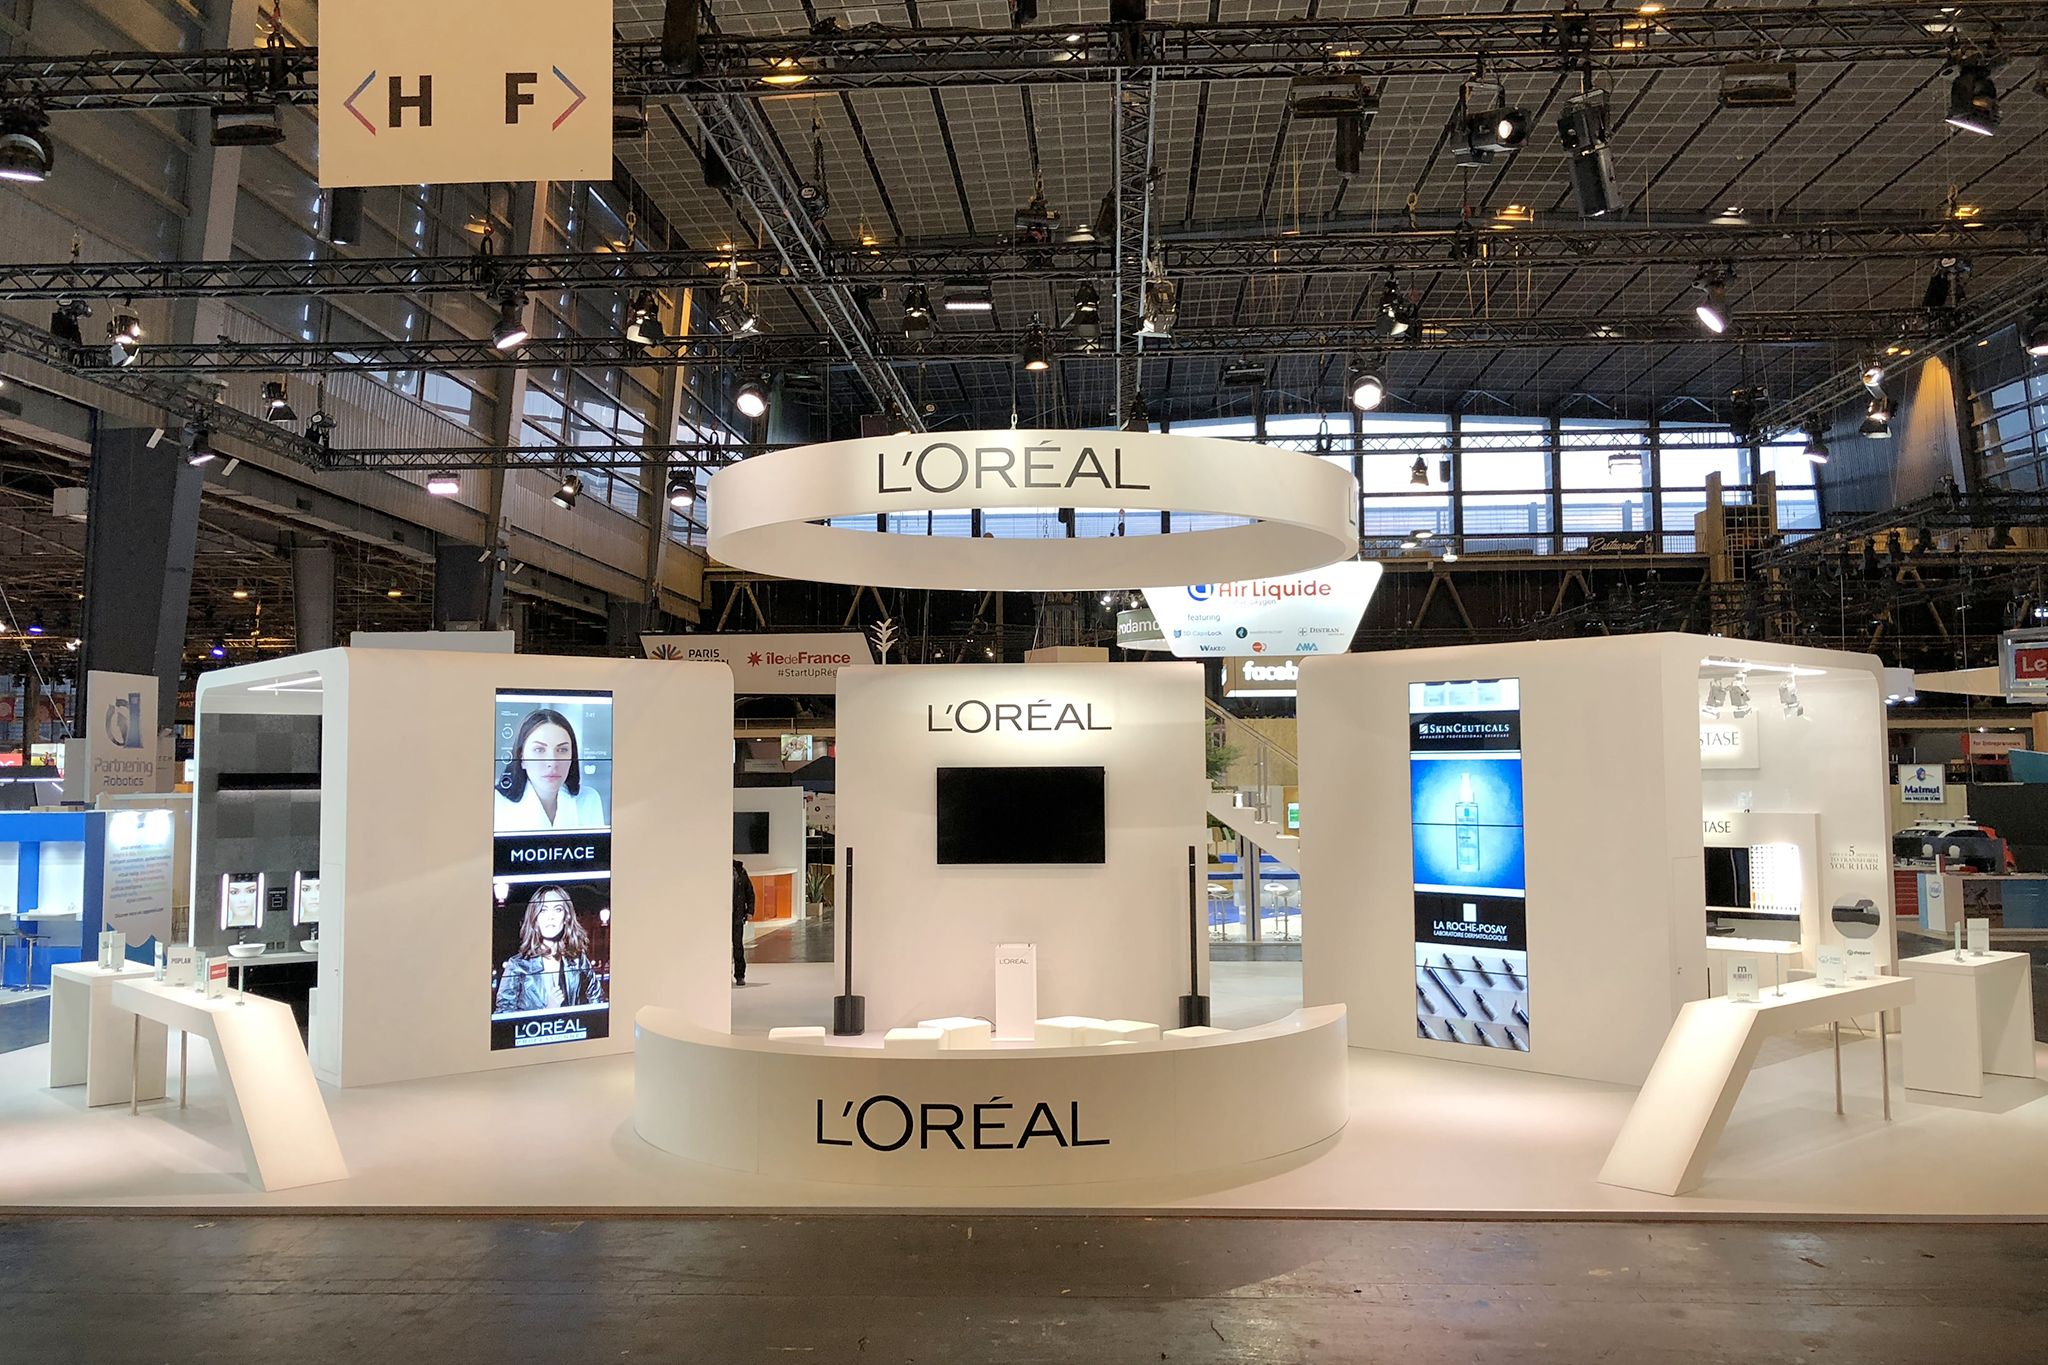 L'Oréal VIVATECH / Publicis - 2018